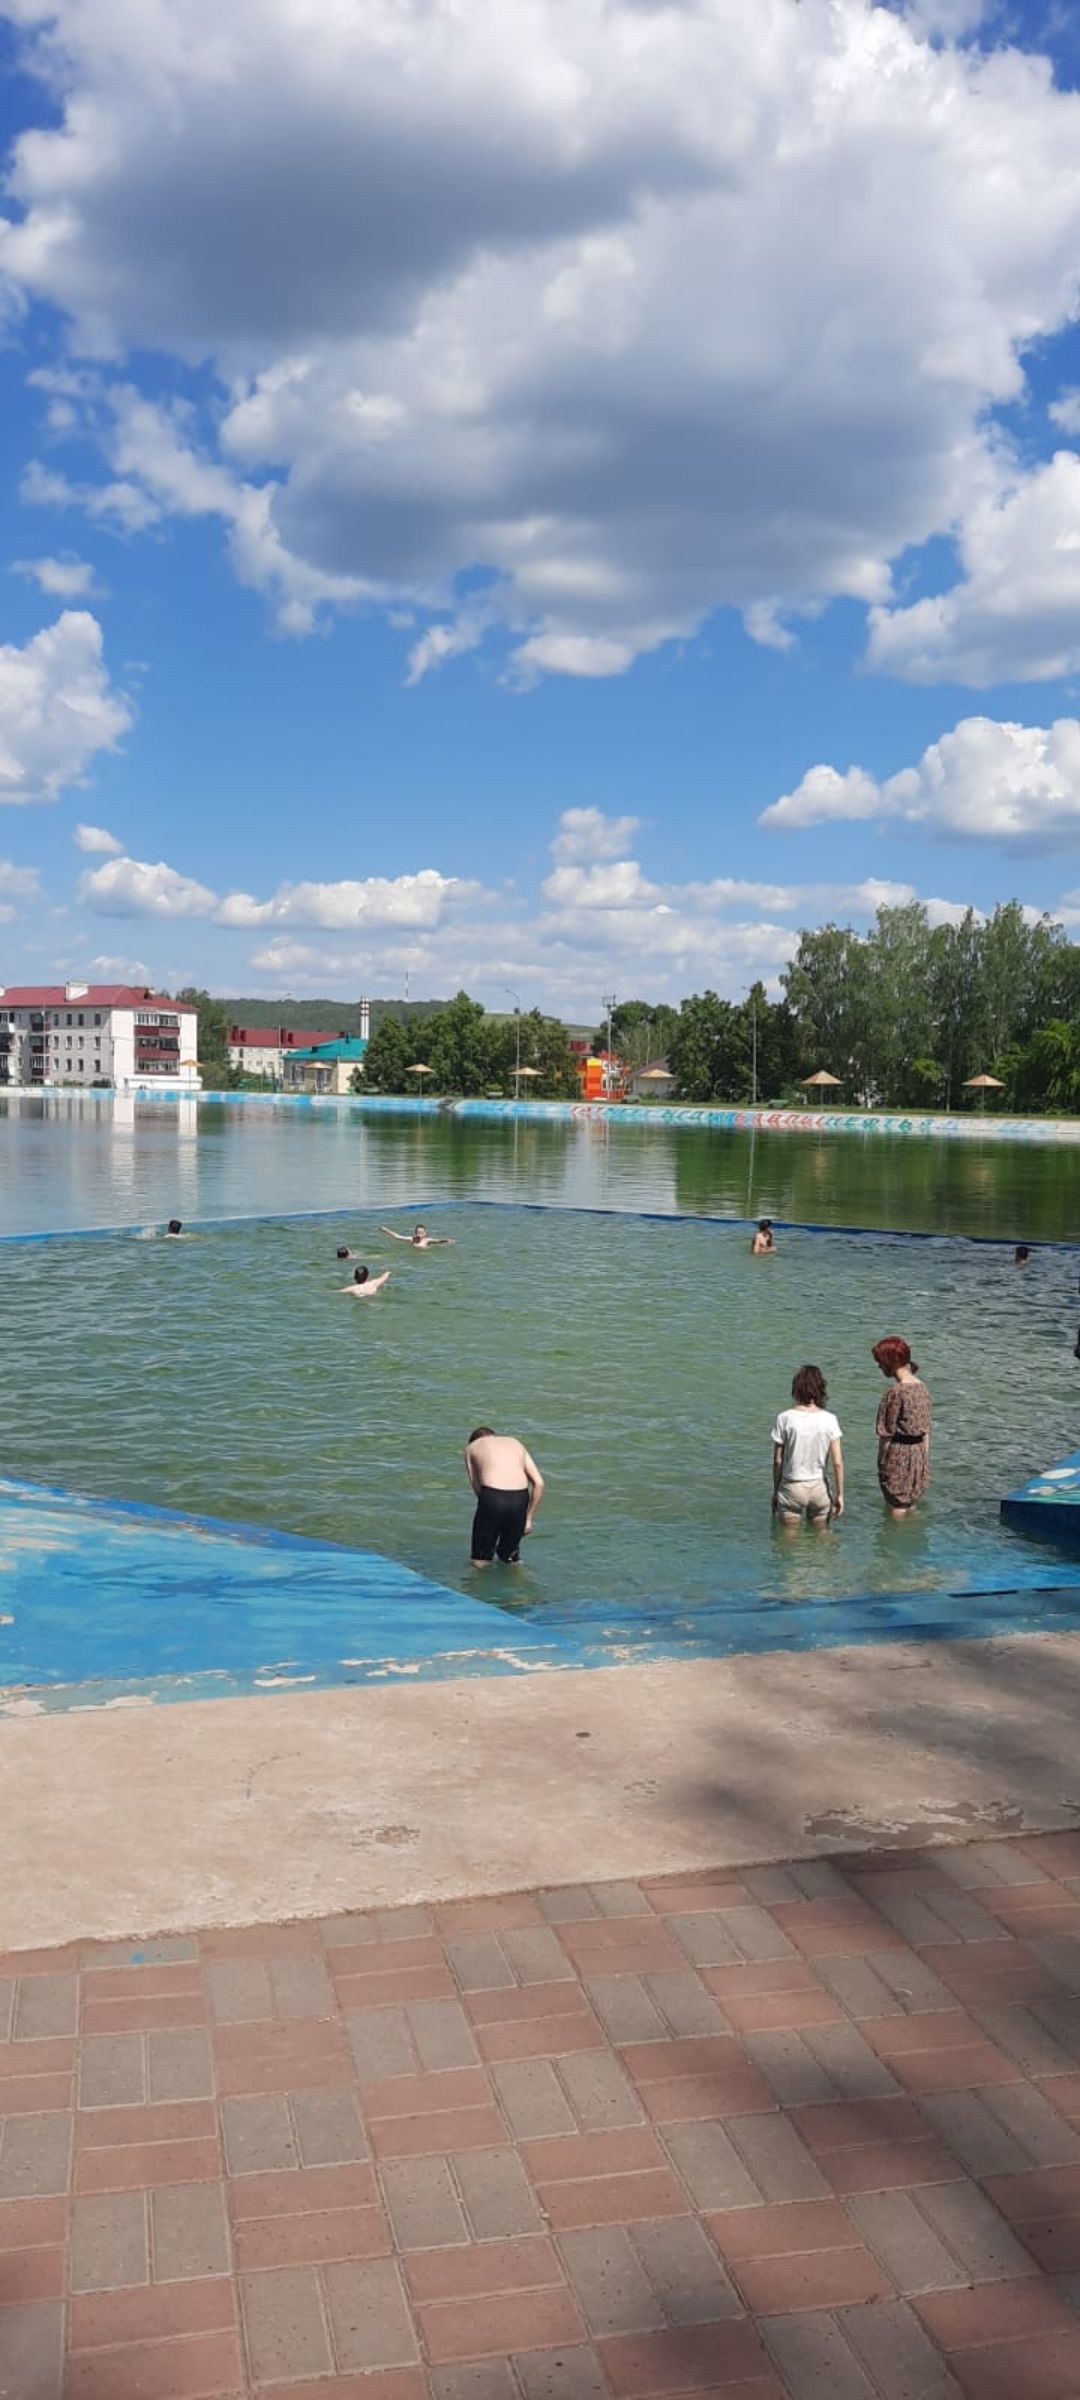 Марсель Ибрагимов: "Купание в бассейне по-прежнему запрещено"